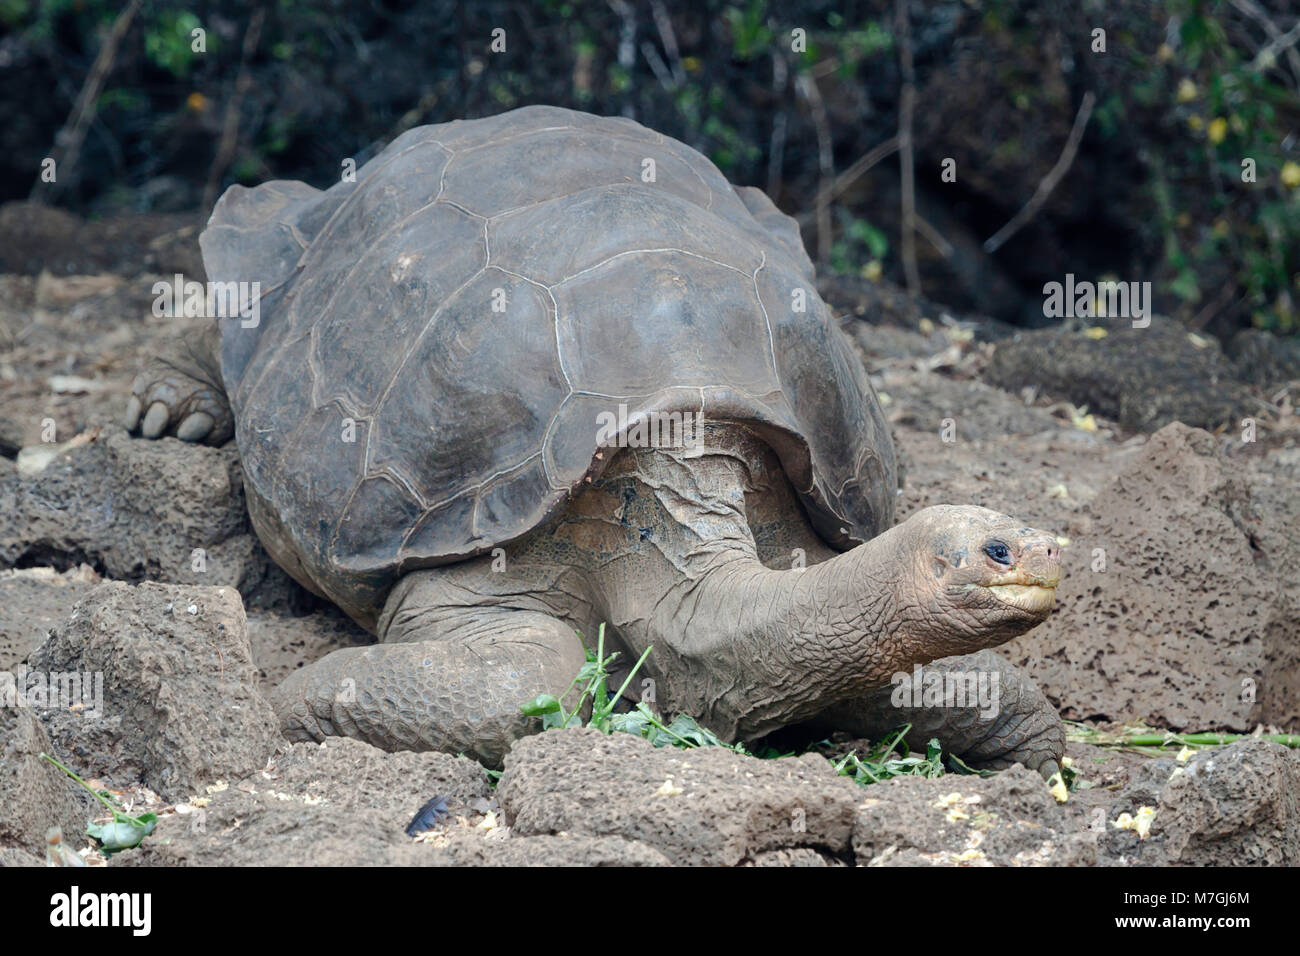 Lonesome George era l'ultima Pinta isola la tartaruga gigante, Chelonoidis nigra abingdonii. Egli è morto domenica 24 giugno 2012 ed è stato creduto per essere arou Foto Stock